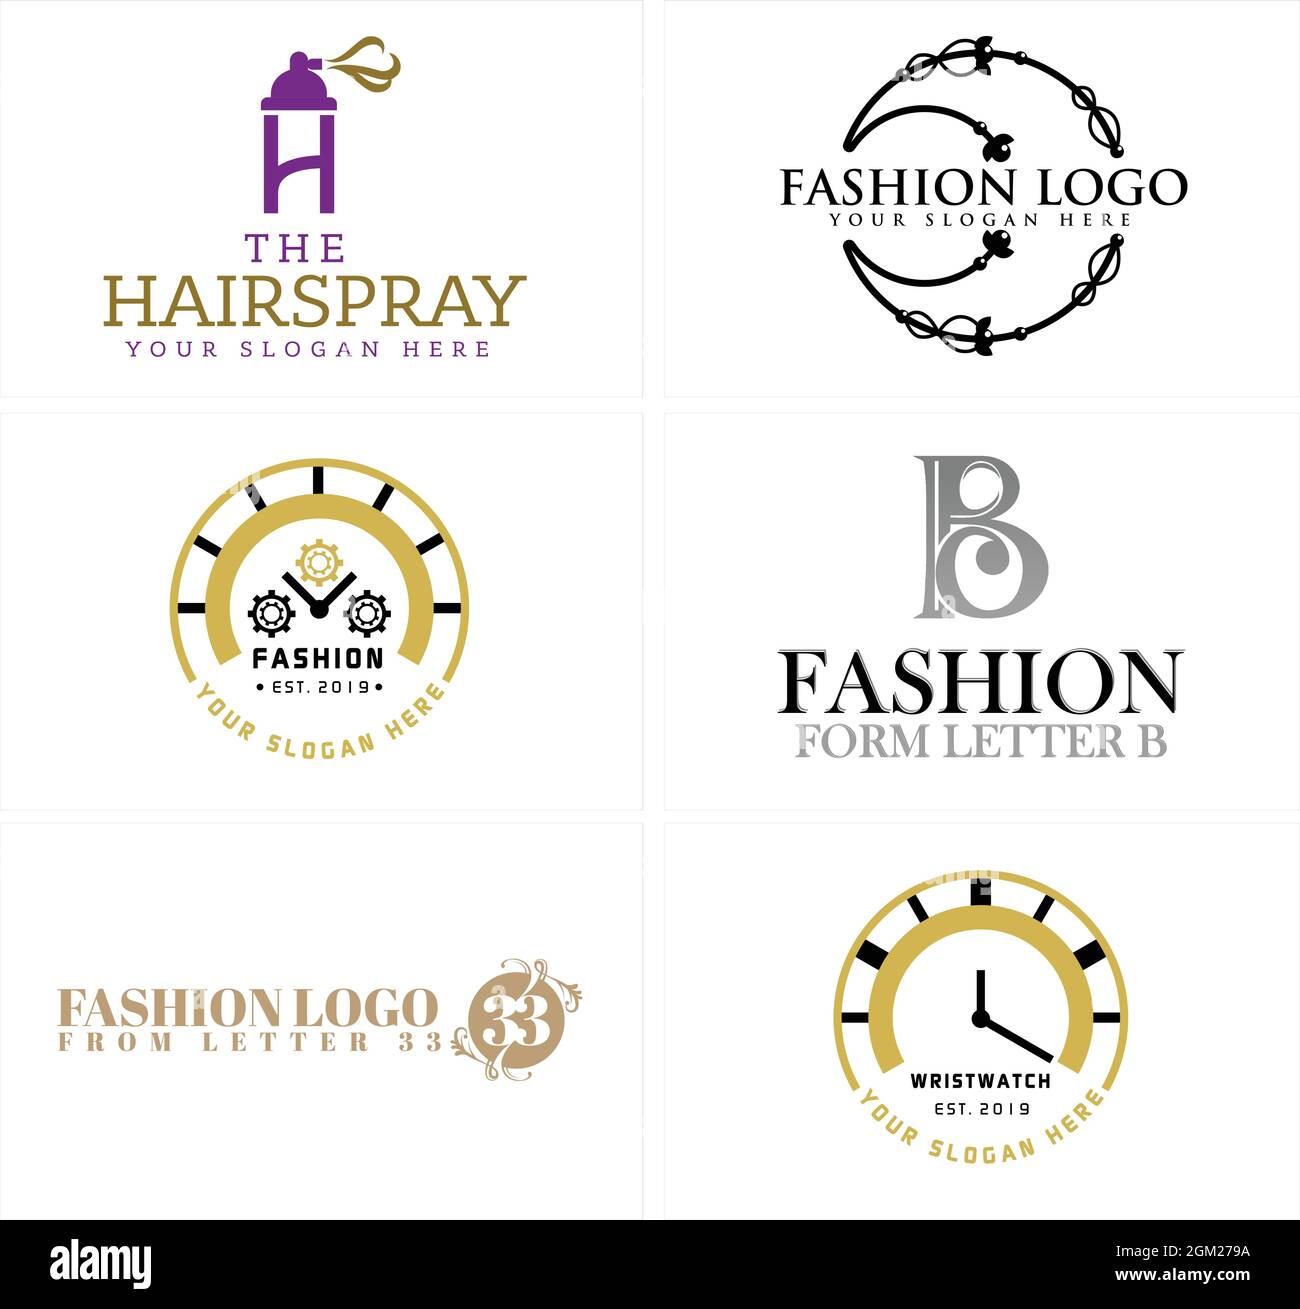 Fashion Logo Design, Fashion Clothes Shop, Boutique, Beauty Salon, Dress  Store Label Stock Vector